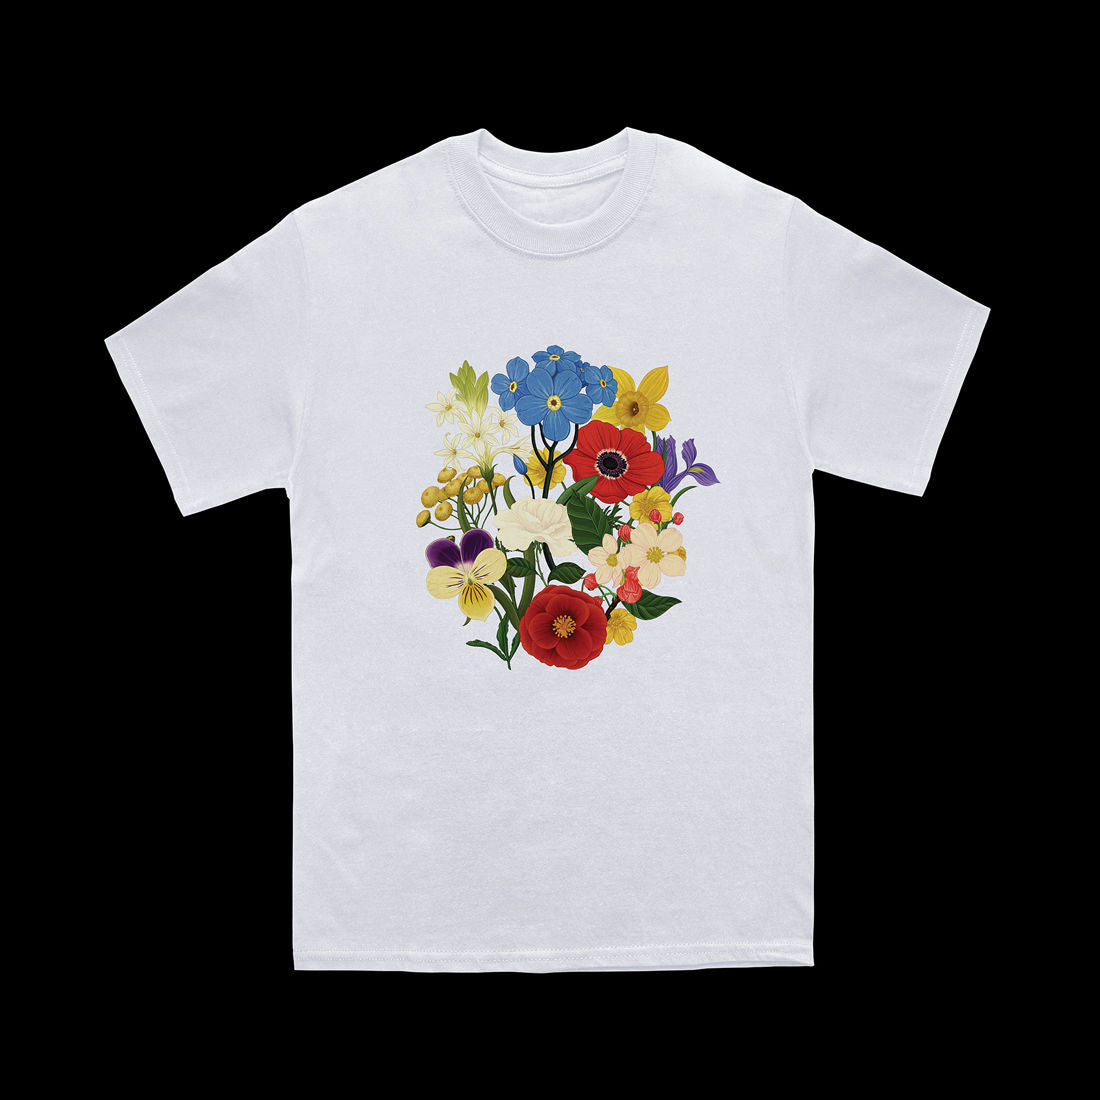 Abbey Road White T-shirt